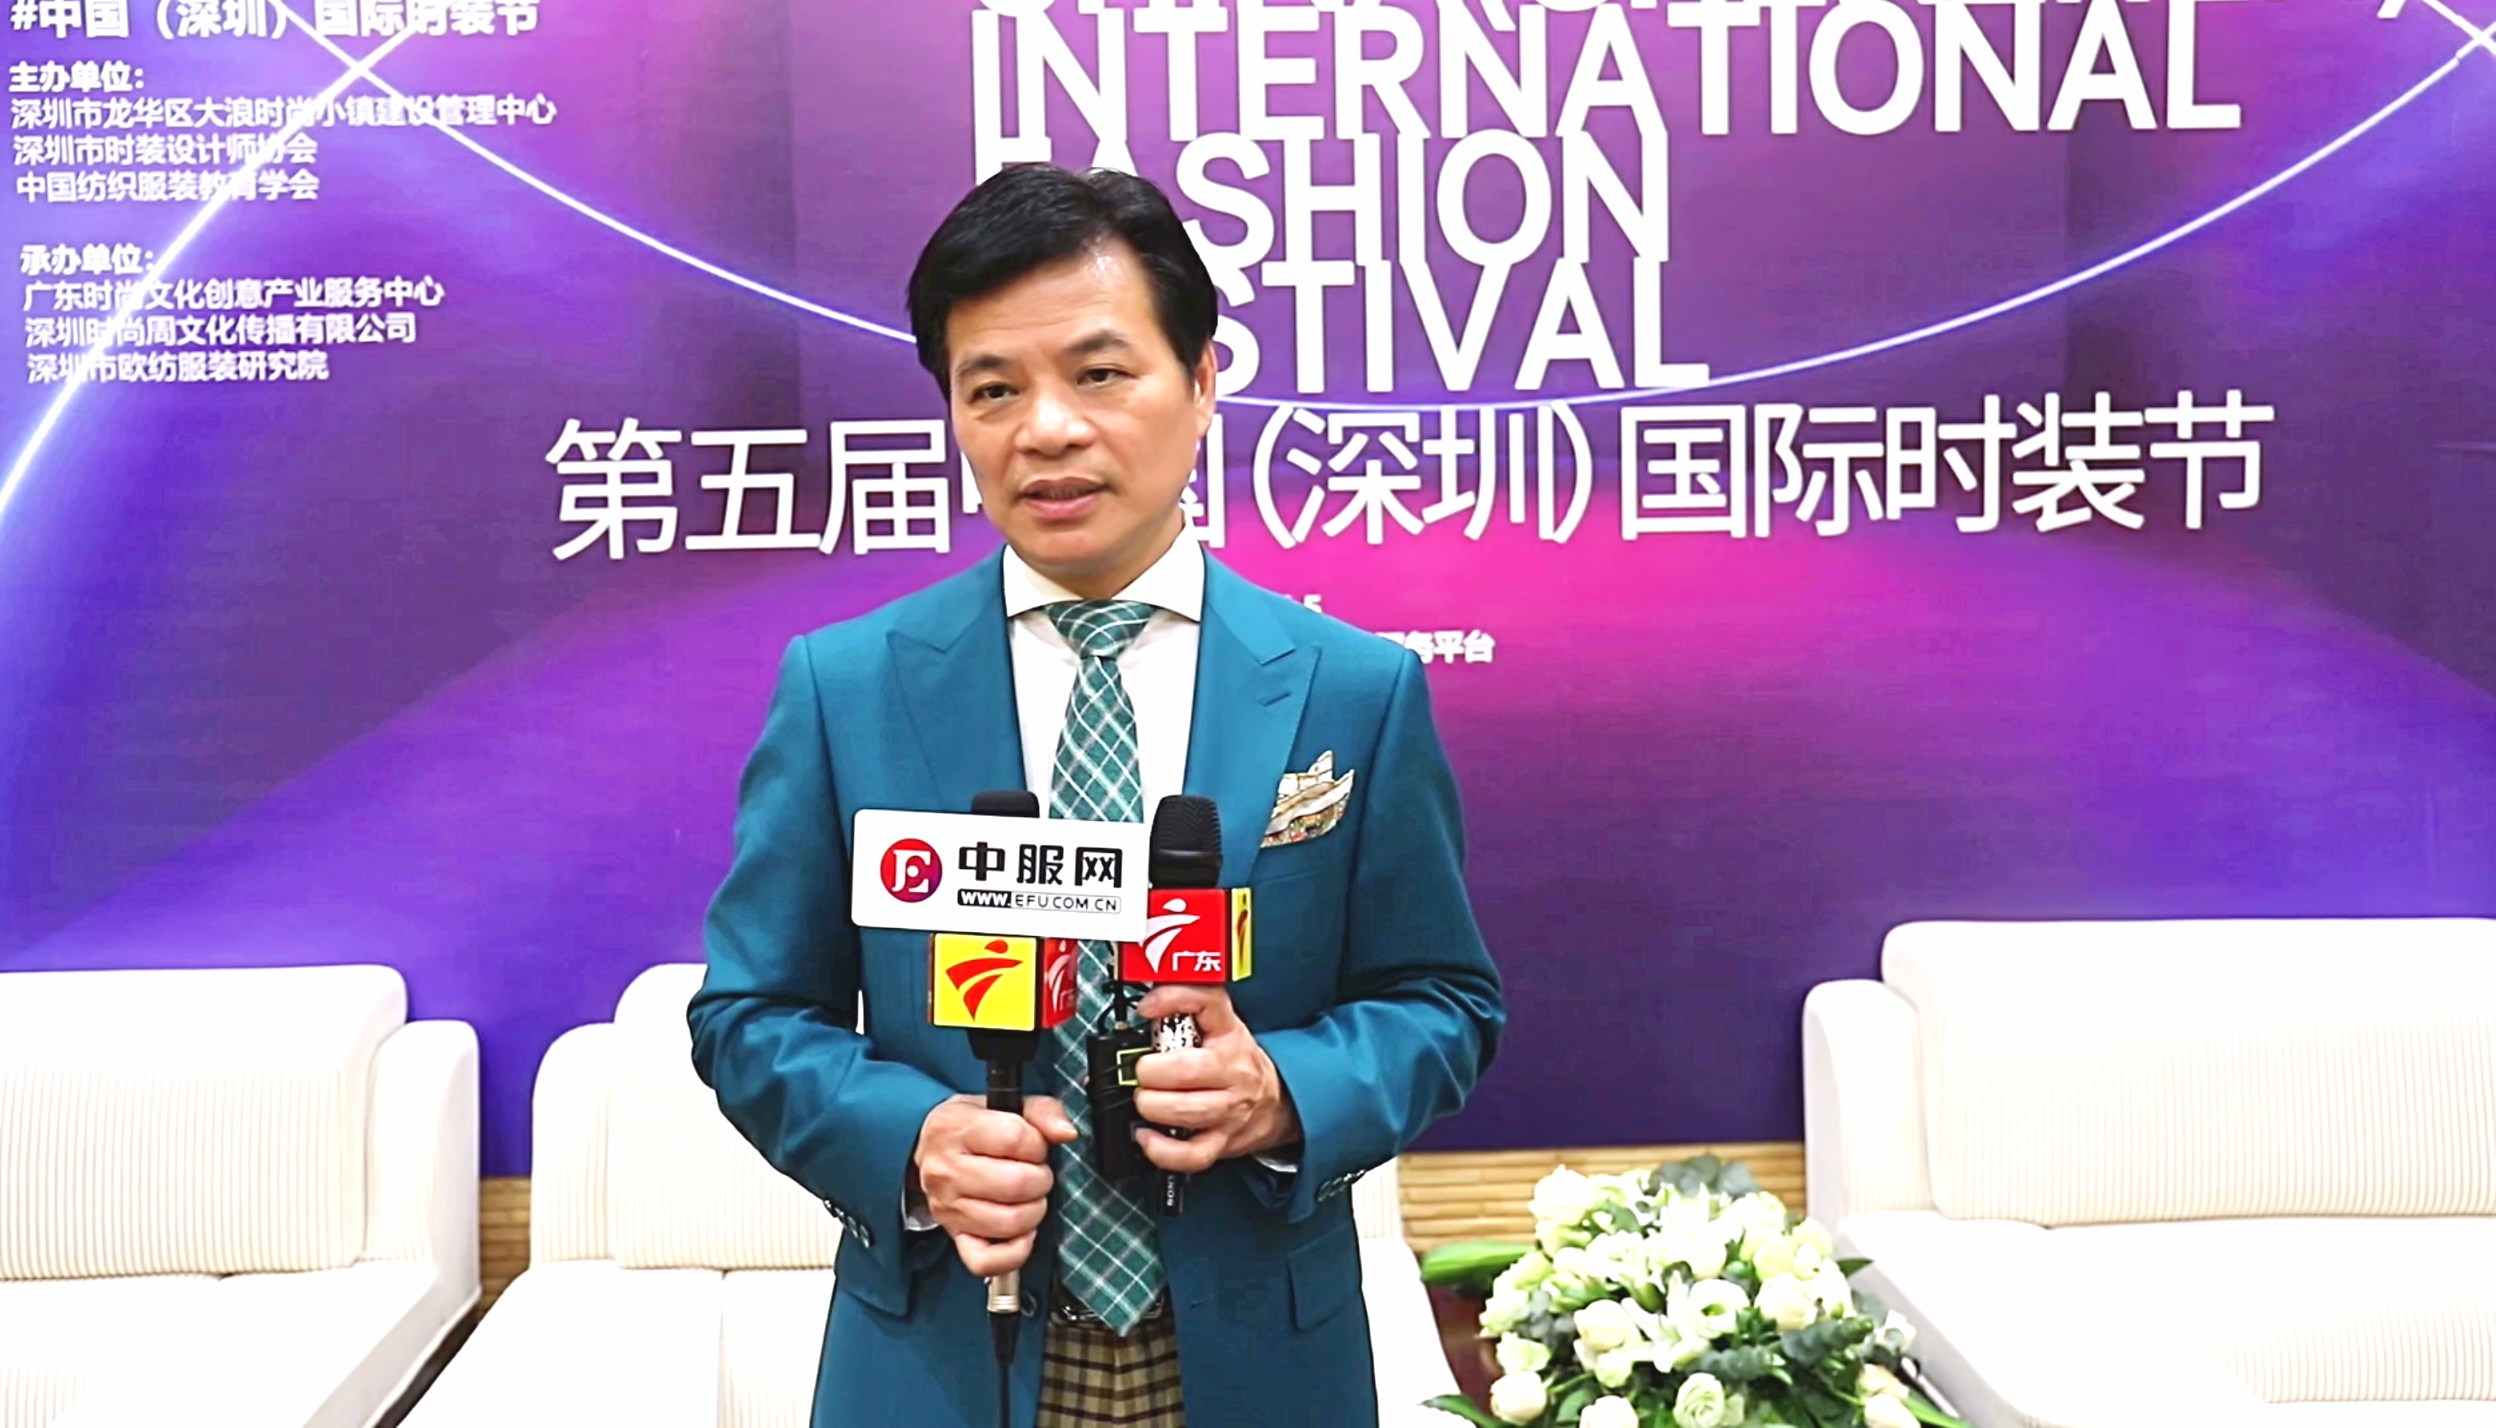 深圳市时装设计师协会会长周世康接受采访。